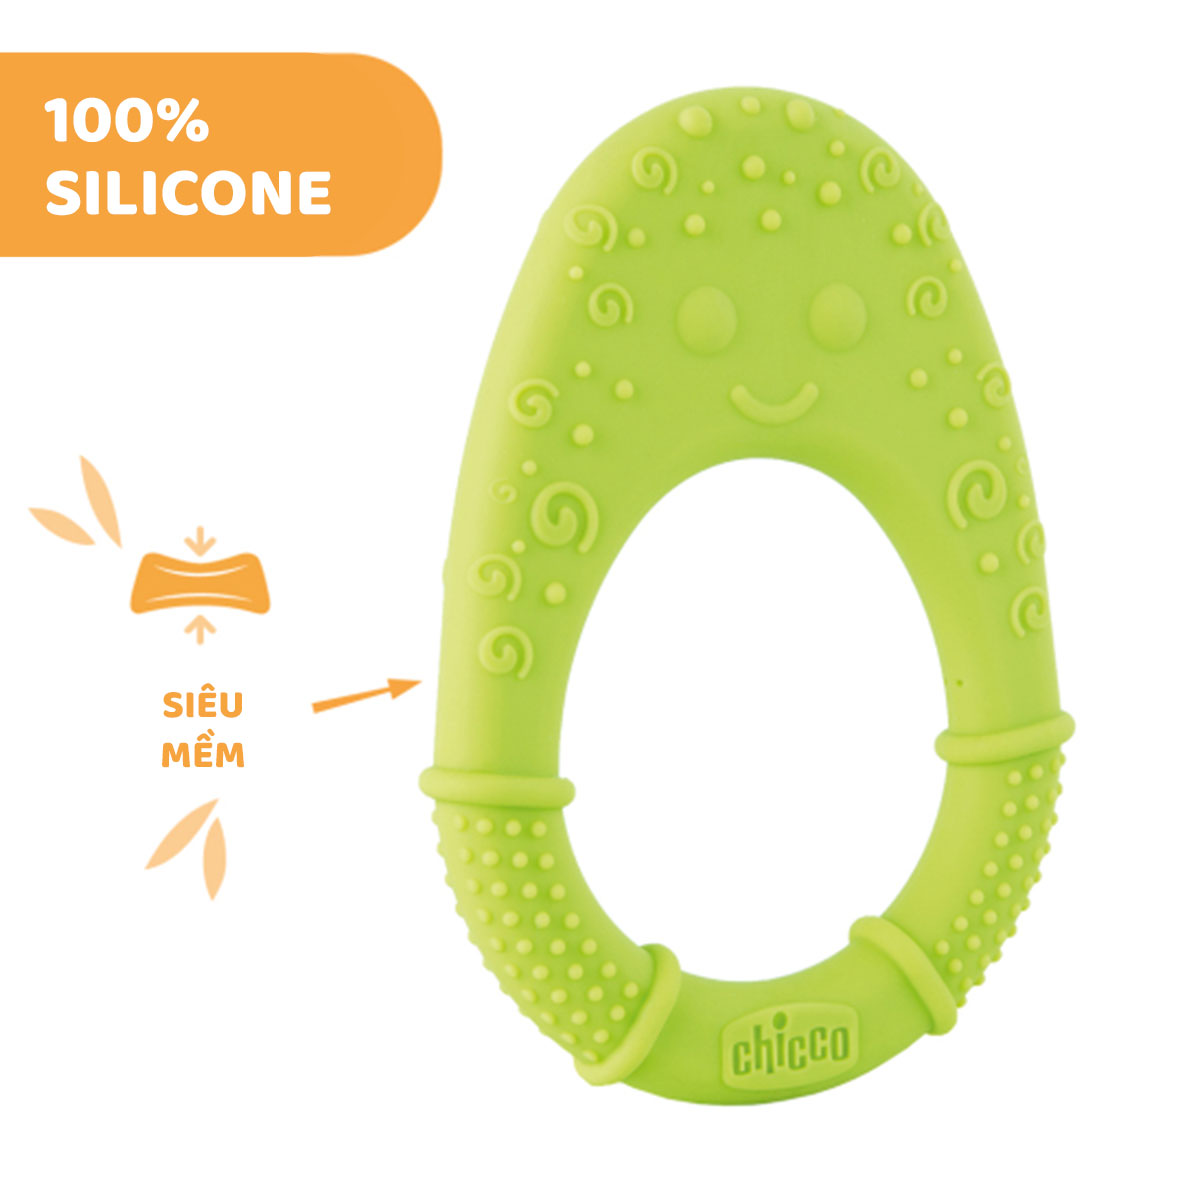 Cắn răng quả bơ silicone siêu mềm Chicco